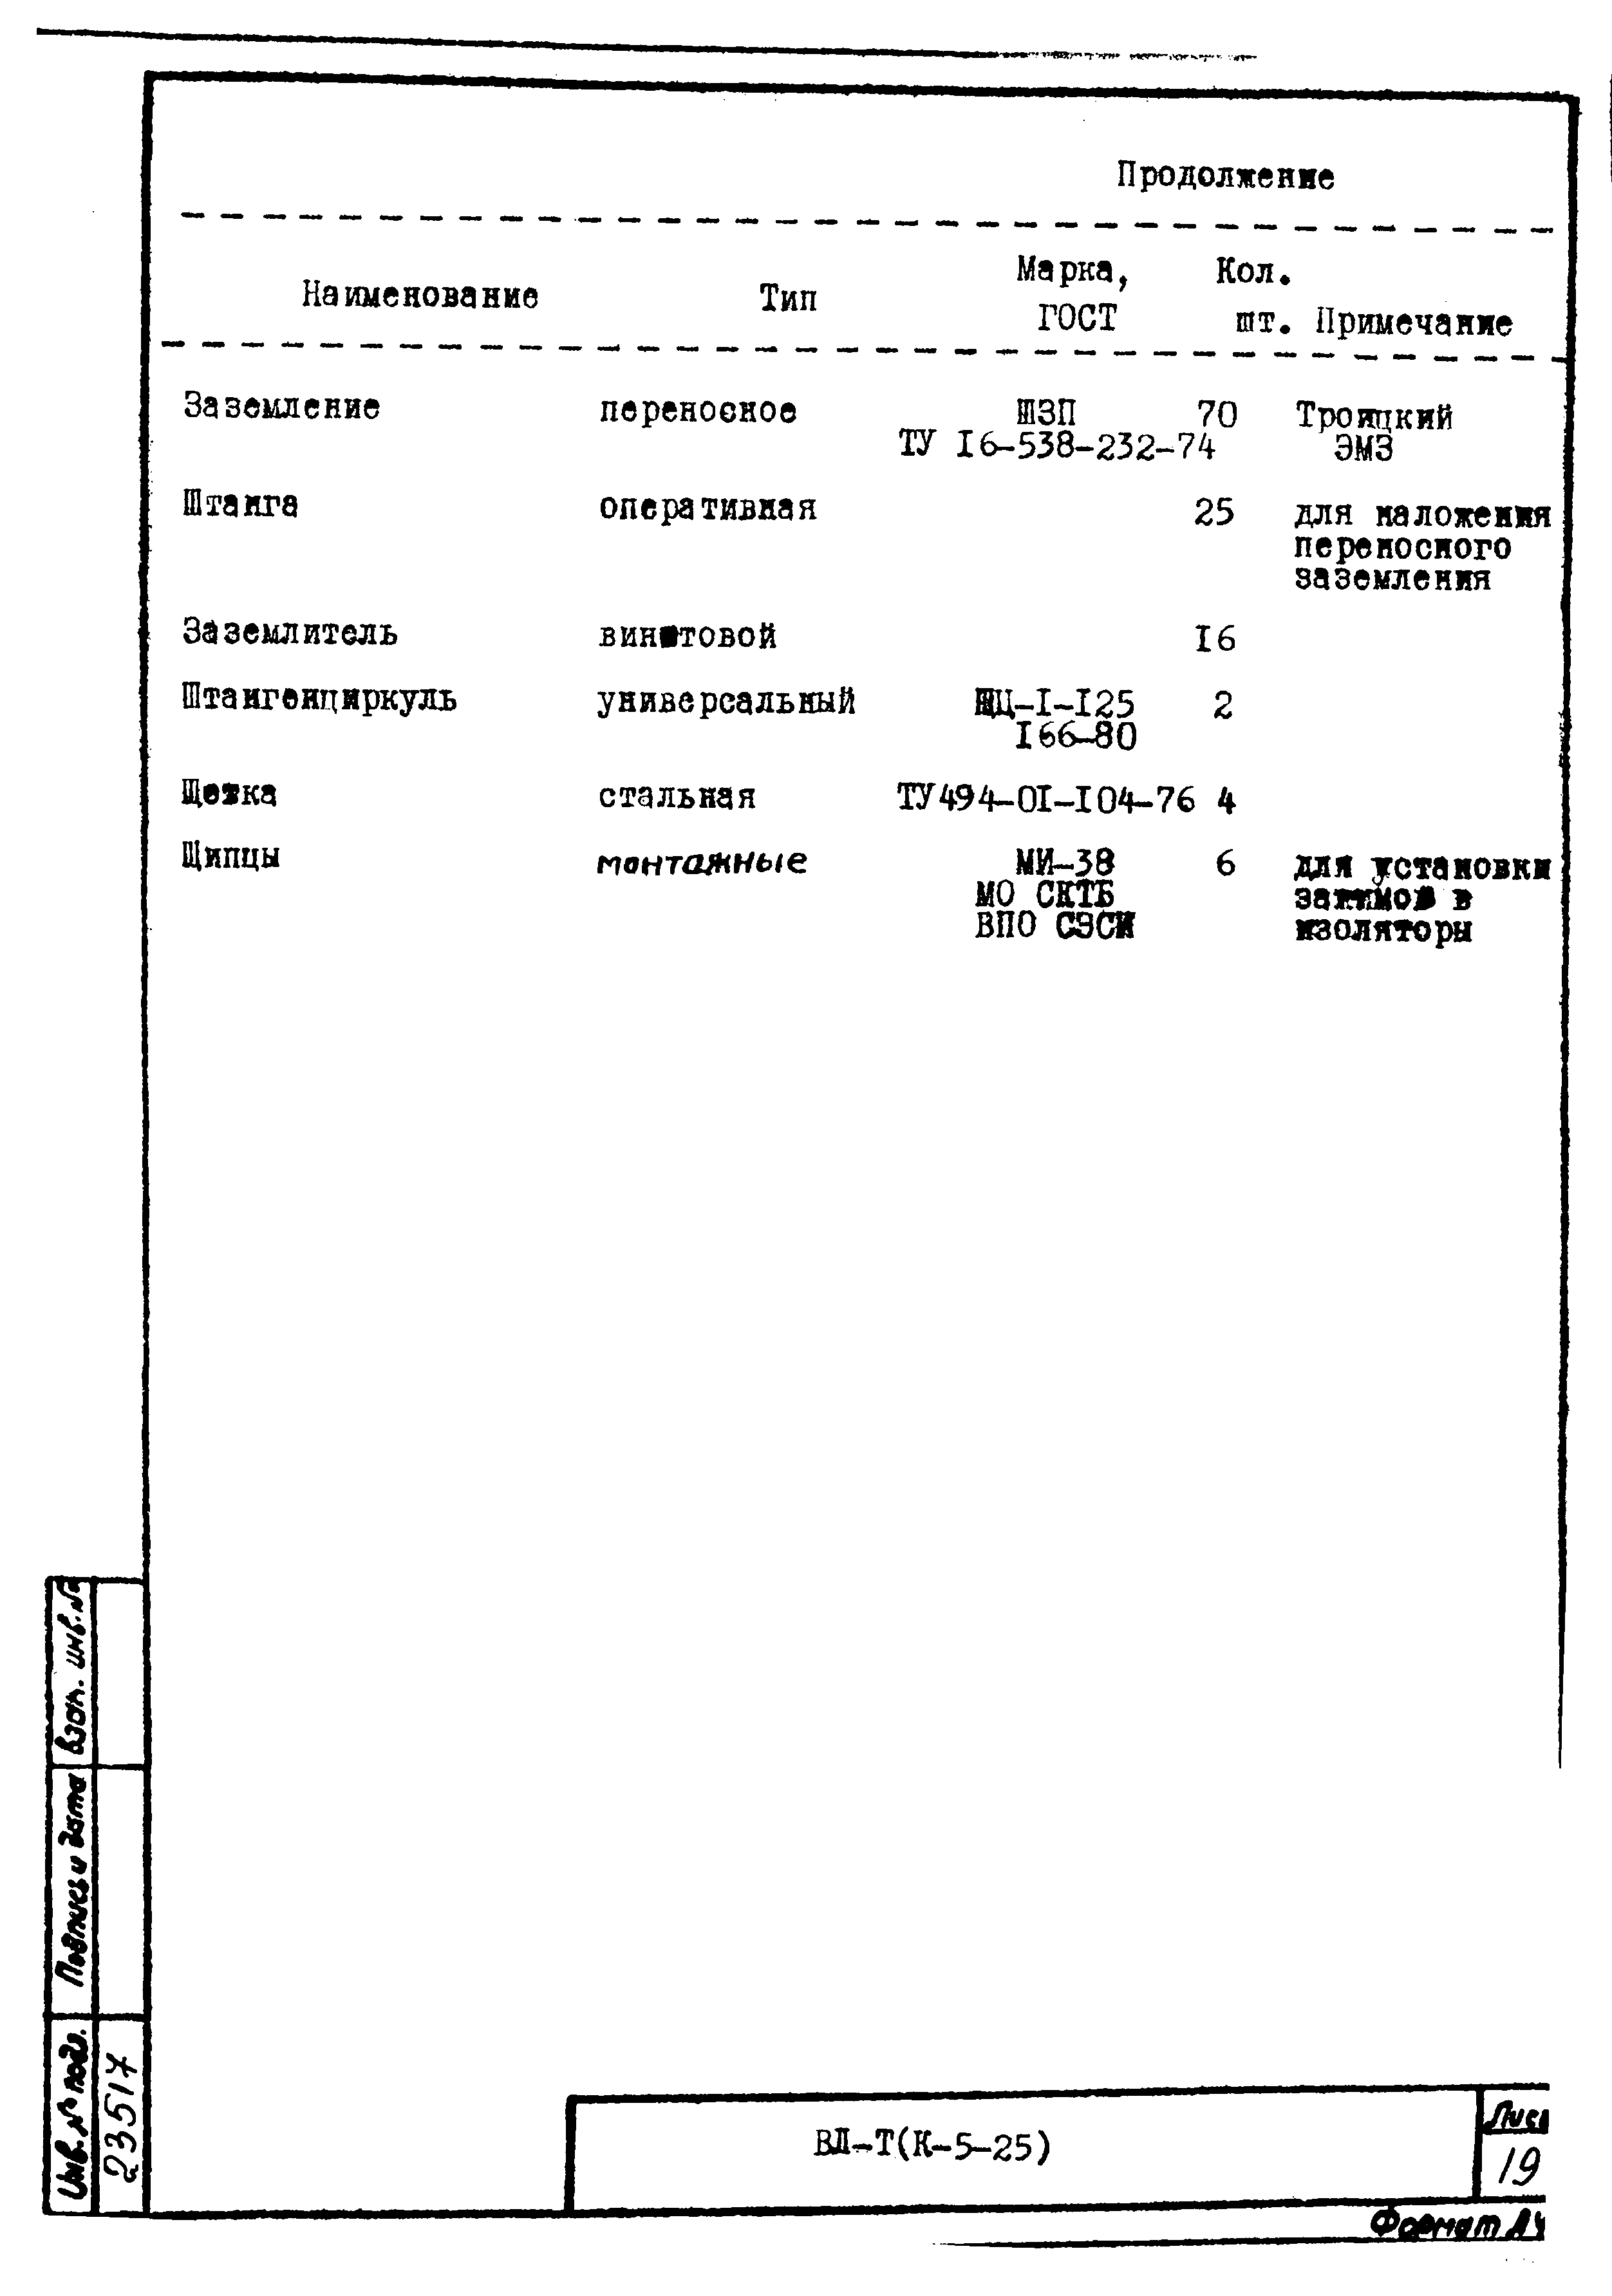 Технологическая карта К-5-25-3